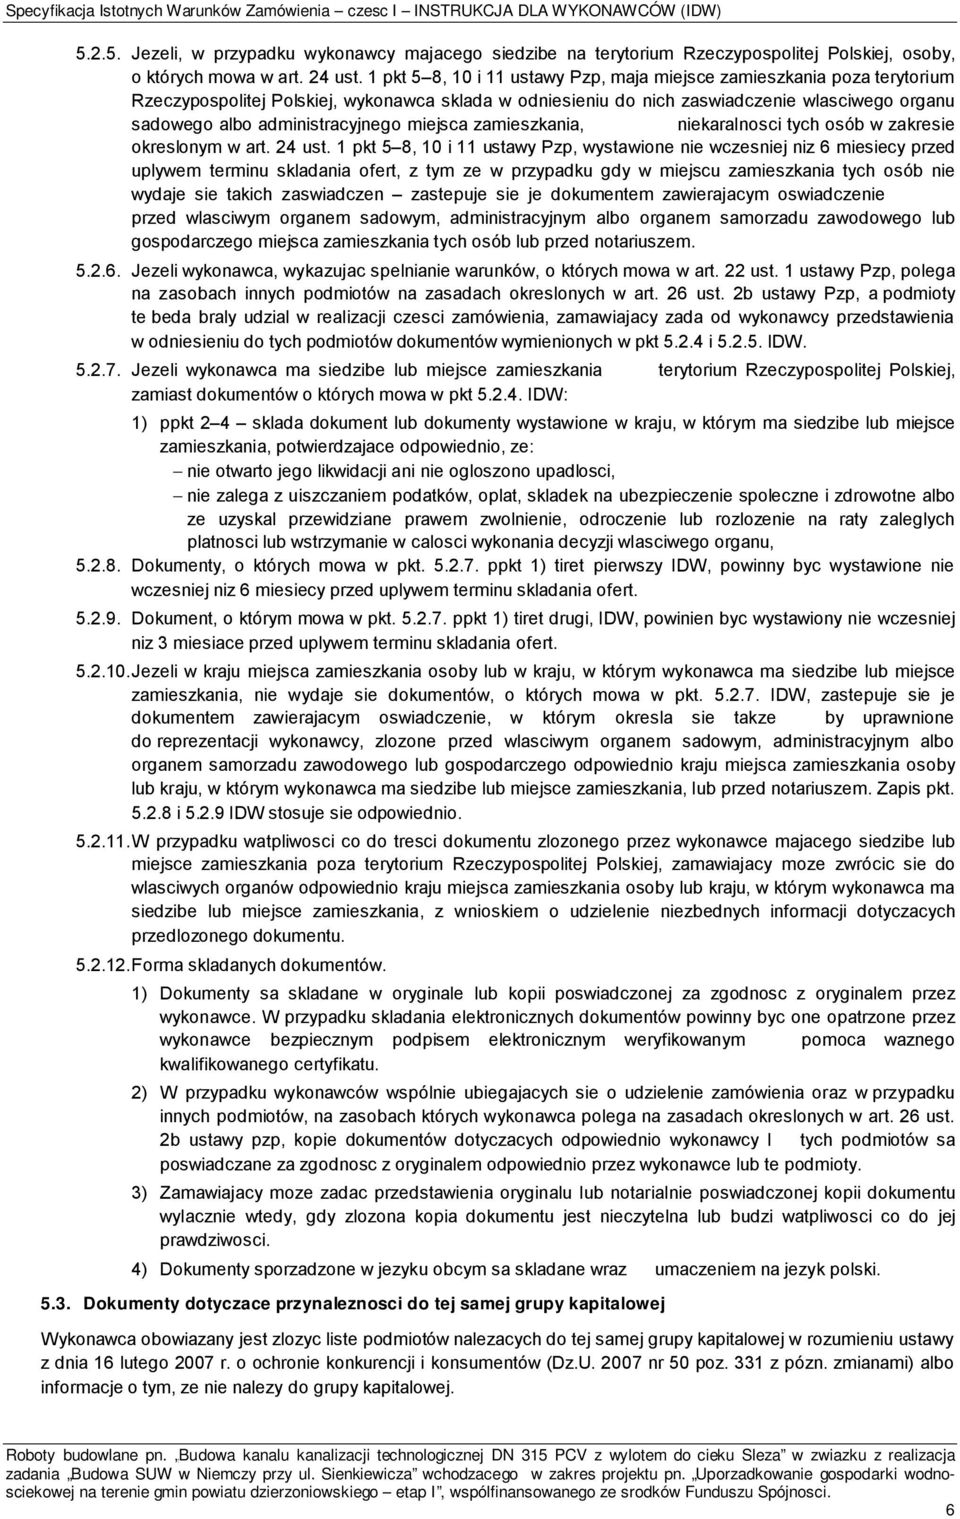 1 pkt 5 8, 10 i 11 ustawy Pzp, maja miejsce zamieszkania poza terytorium Rzeczypospolitej Polskiej, wykonawca sklada w odniesieniu do nich zaswiadczenie wlasciwego organu sadowego albo